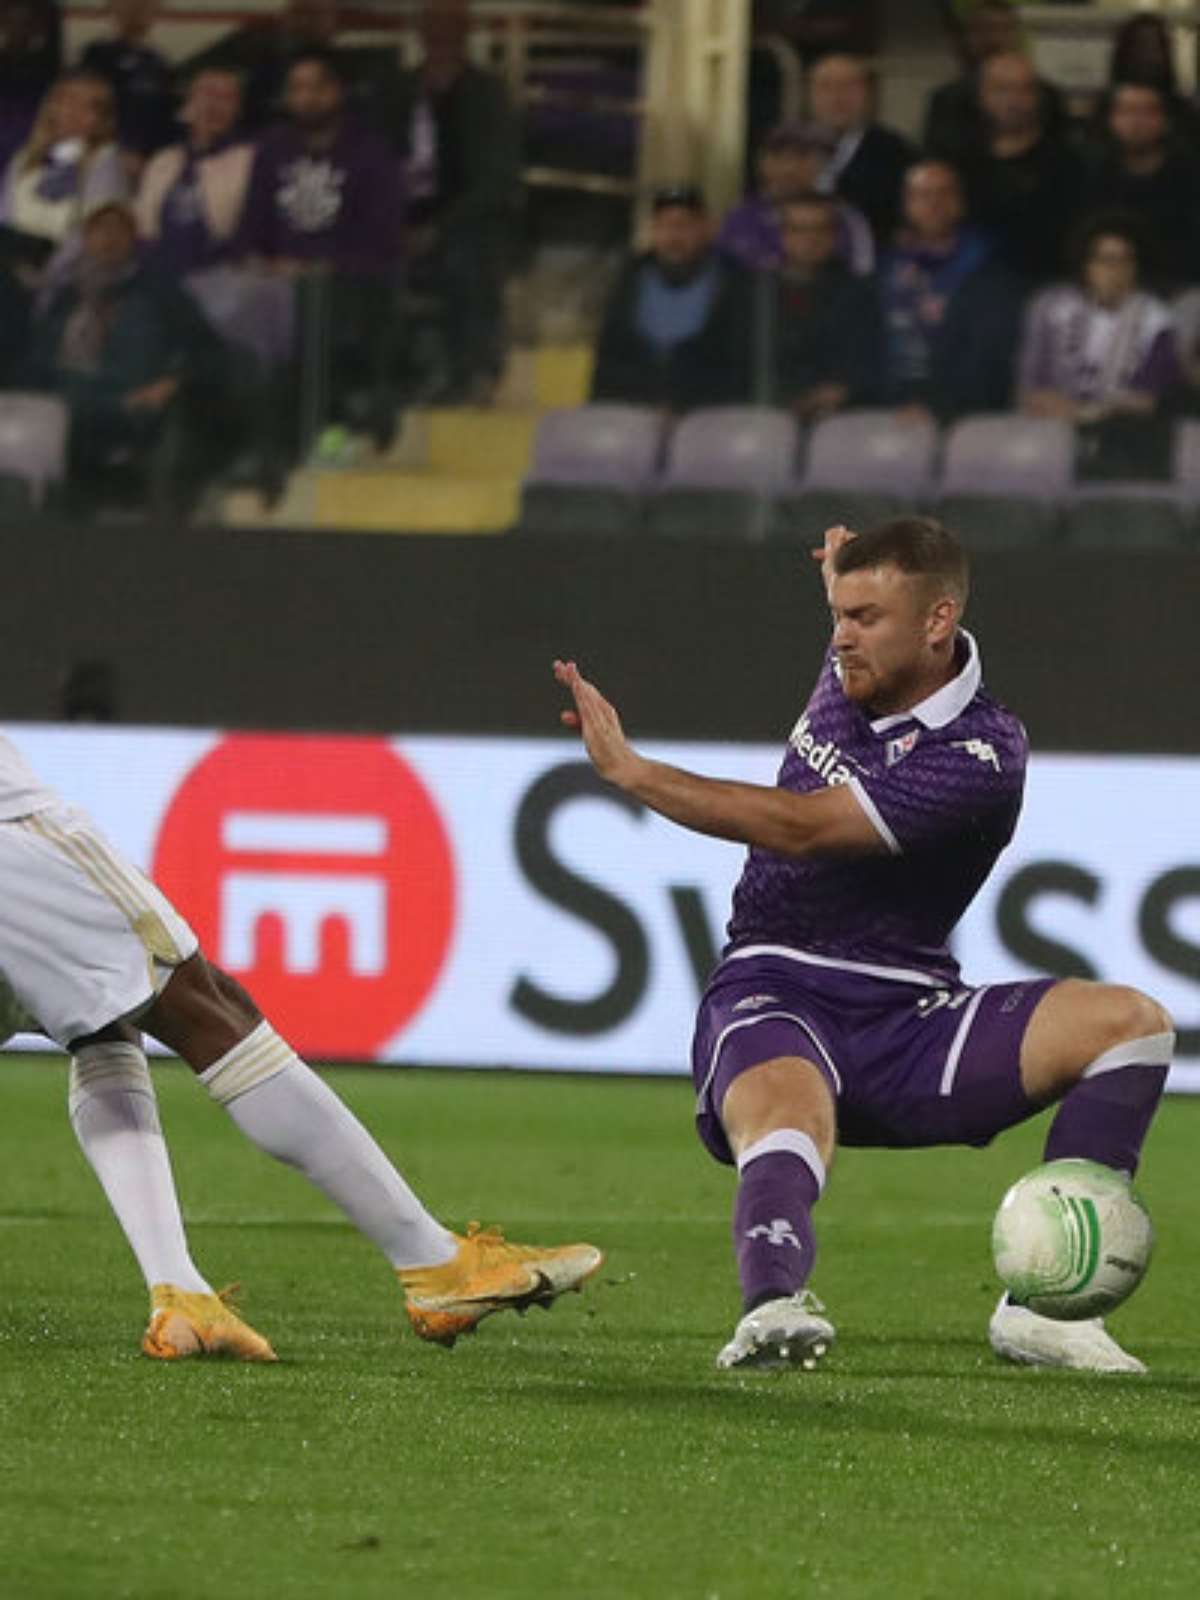 Afastando desconfianças, a Fiorentina goleou o Cukaricki e